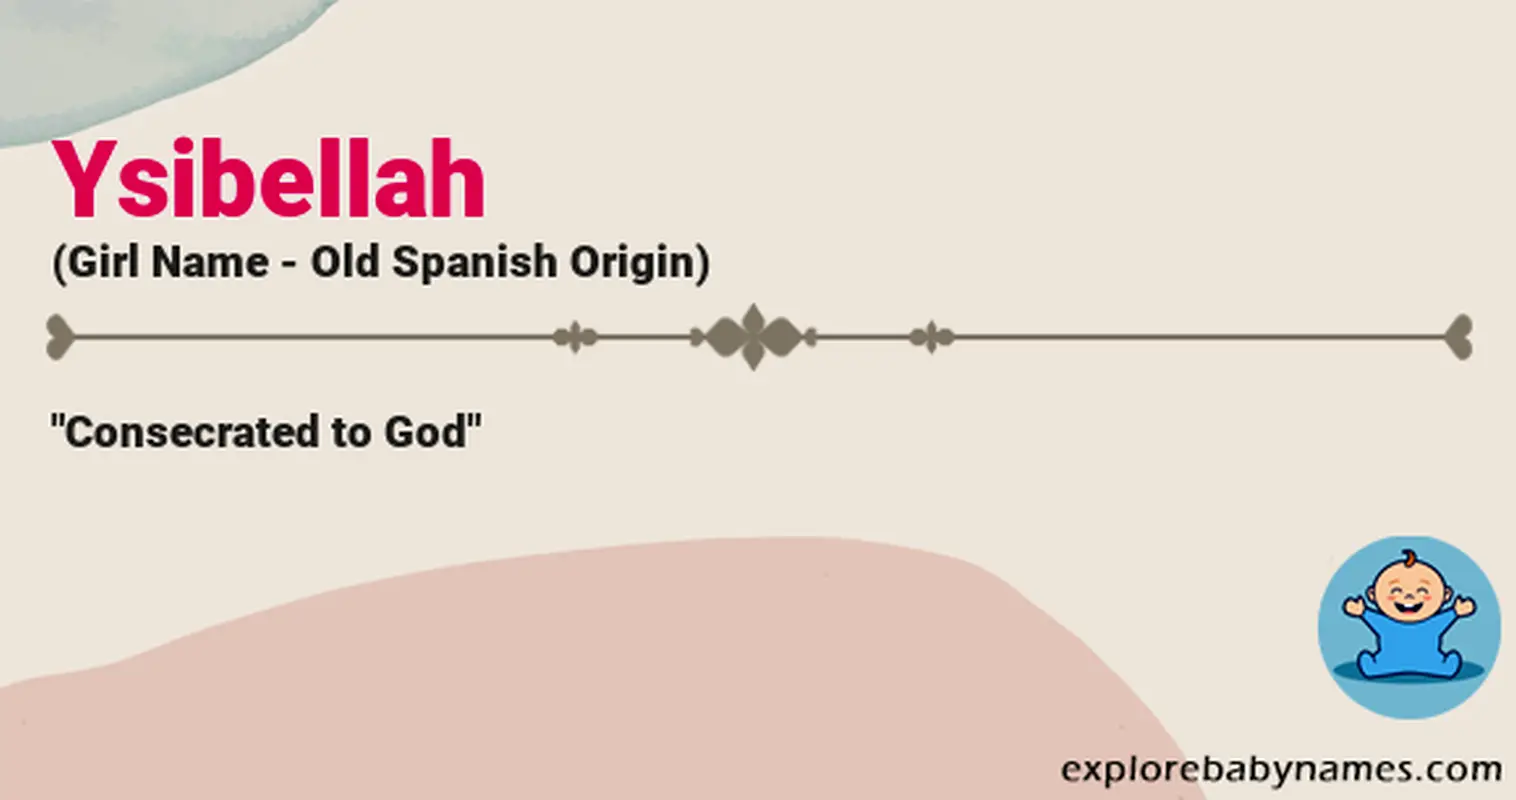 Meaning of Ysibellah